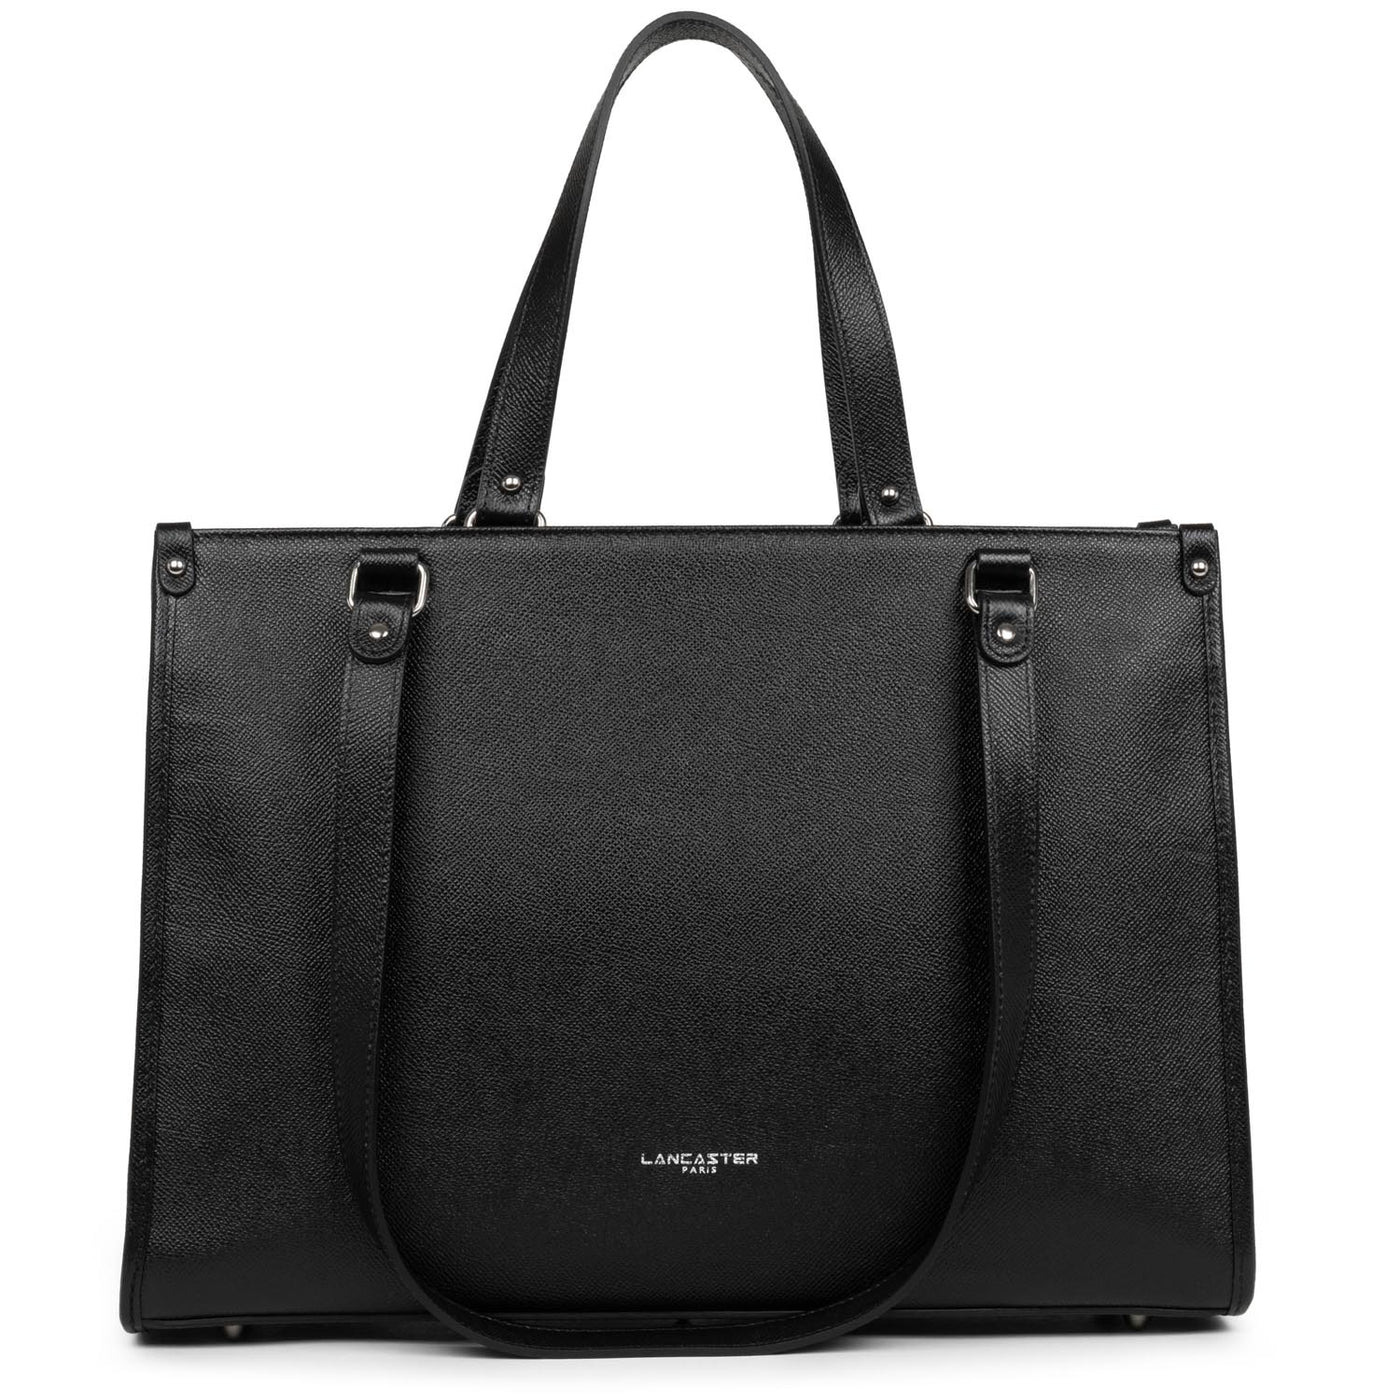 sac cabas épaule - delphino it #couleur_noir